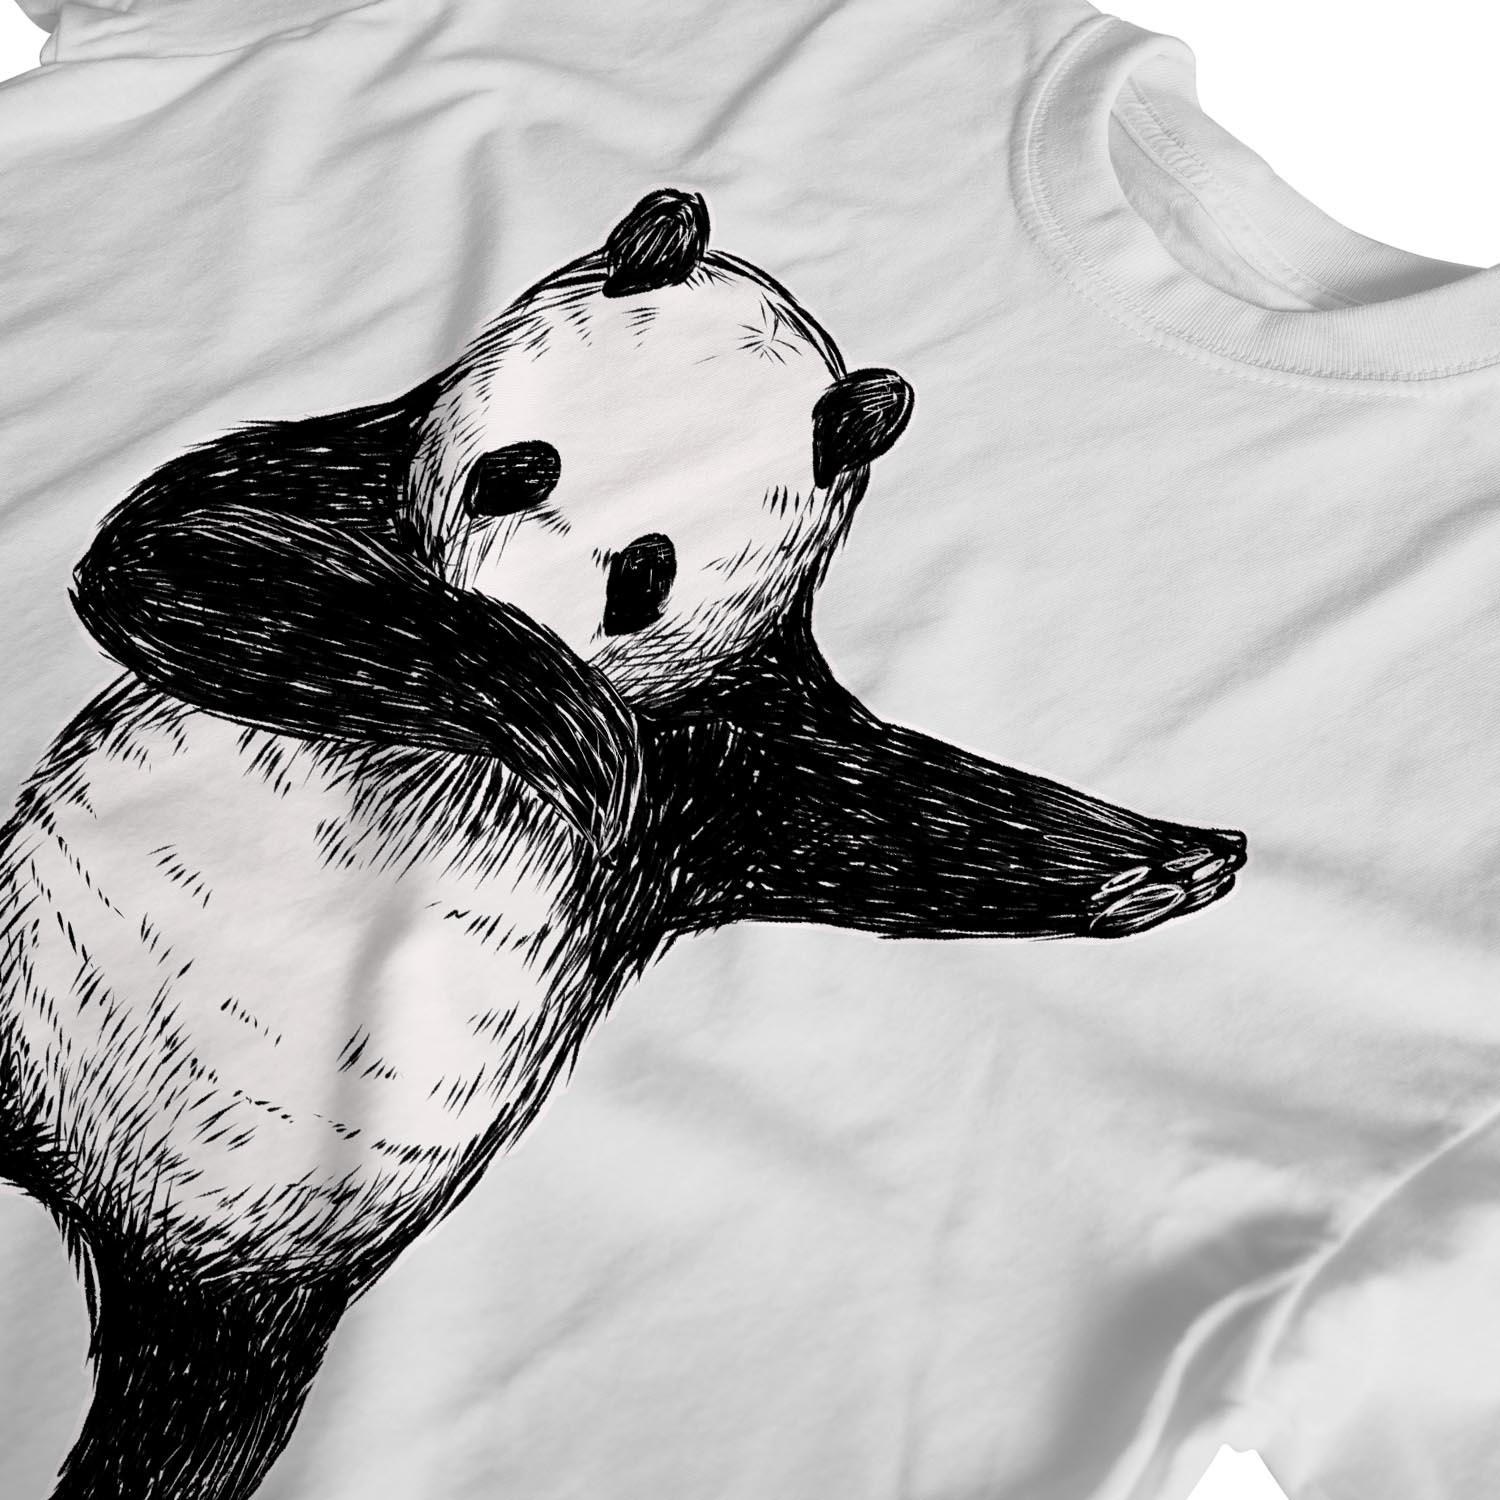 Panda dabbing illustration men's t-shirt 